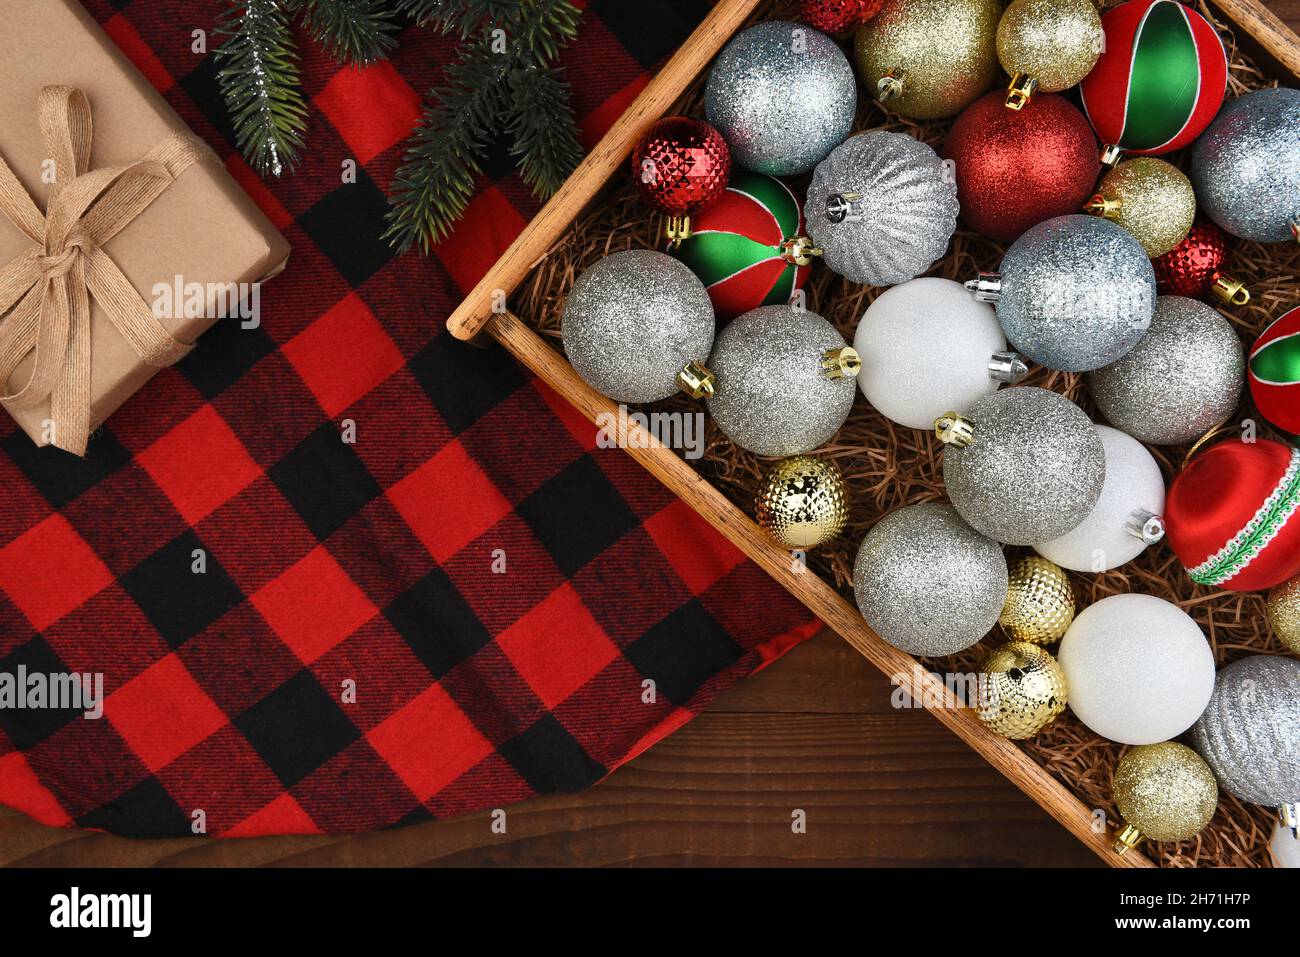 Décoration de Noël - boîte en bois d'ornements de sapin de Noël sur une jupe à carreaux avec cadeau et creux en pin. Banque D'Images